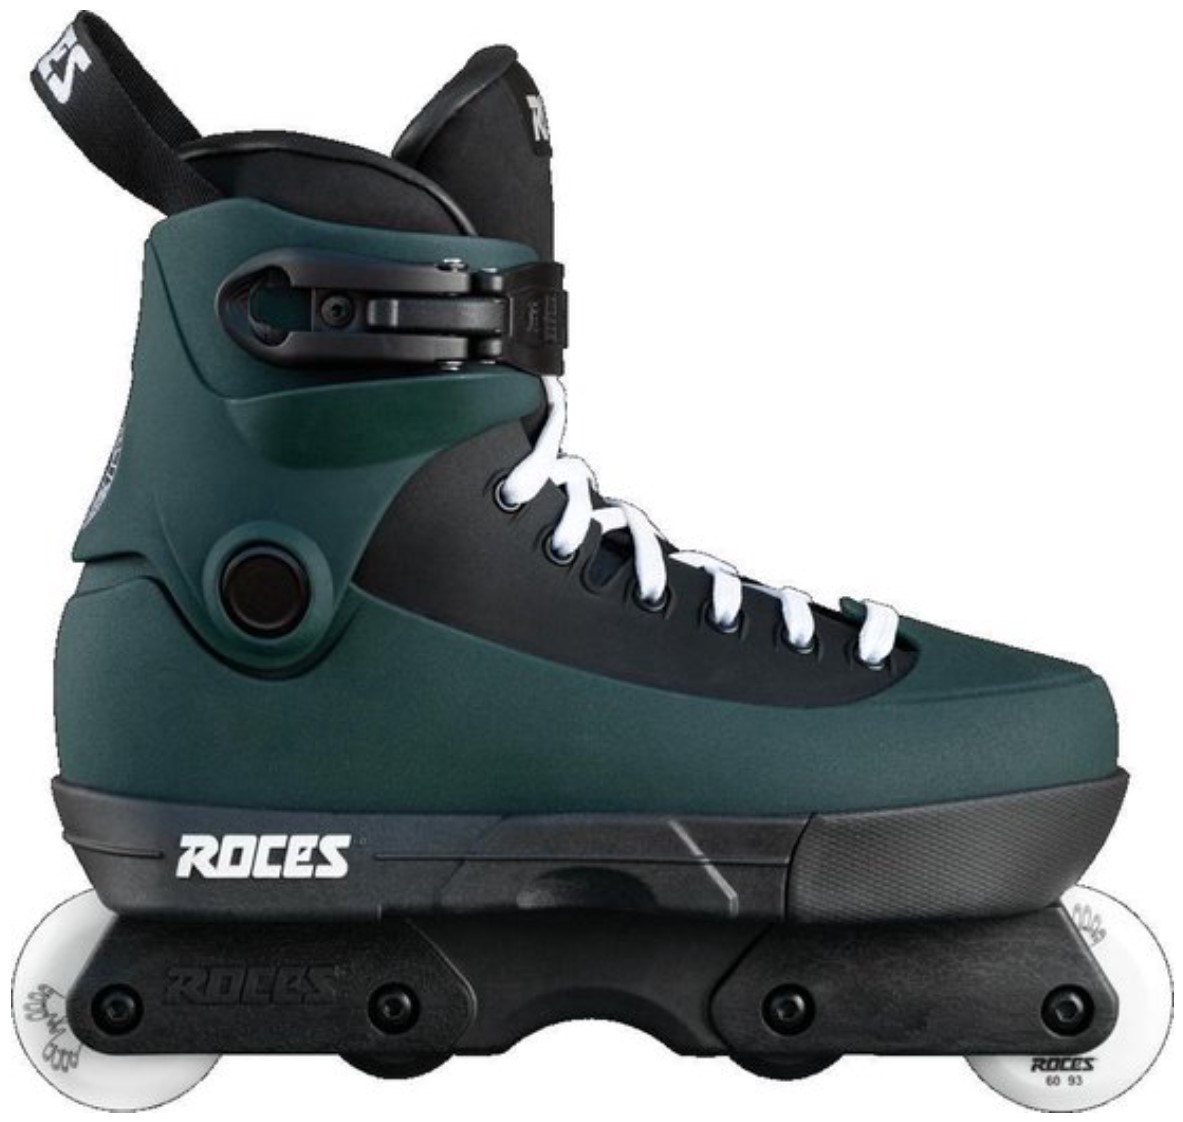 Roces 5th Element Goto Fuka Green inline skate aggressive